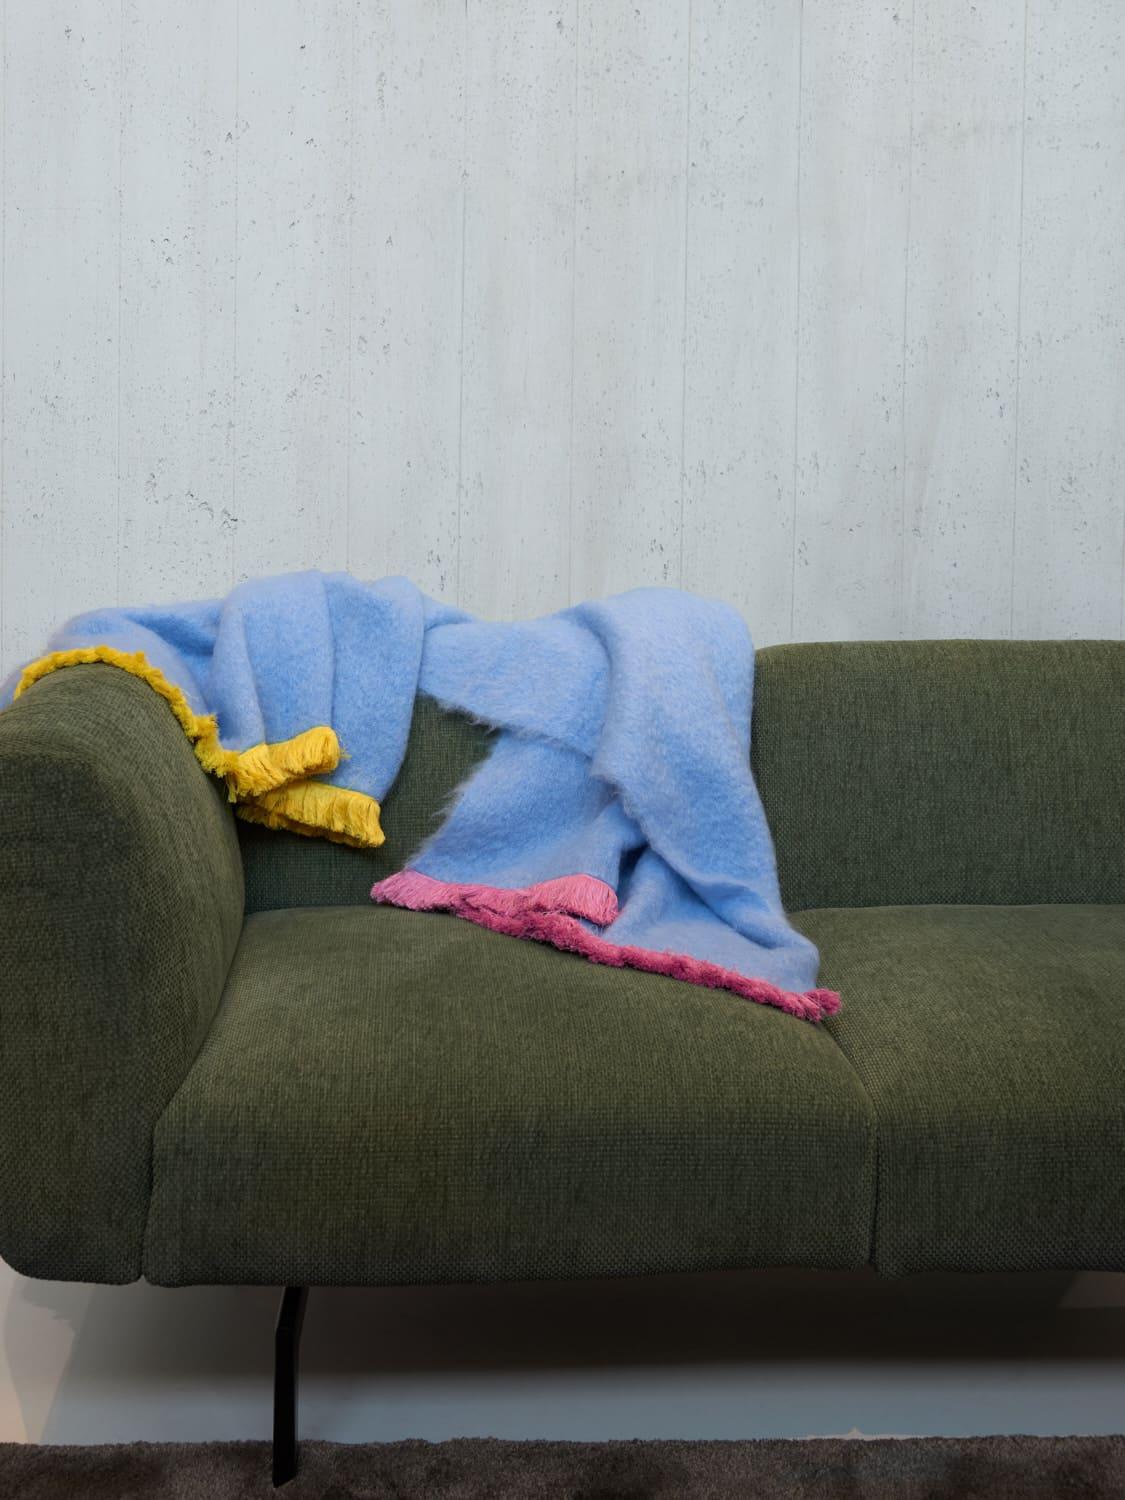 Pompallier, eine süße blaue Decke aus feinstem neuseeländischem Mohair. Gekennzeichnet durch eine rosa und gelbe Fransenbordüre, die komplett von Hand gestickt ist. Nichts ist so persönlich wie Ihre eigene Einrichtung, die Farben können auf Anfrage